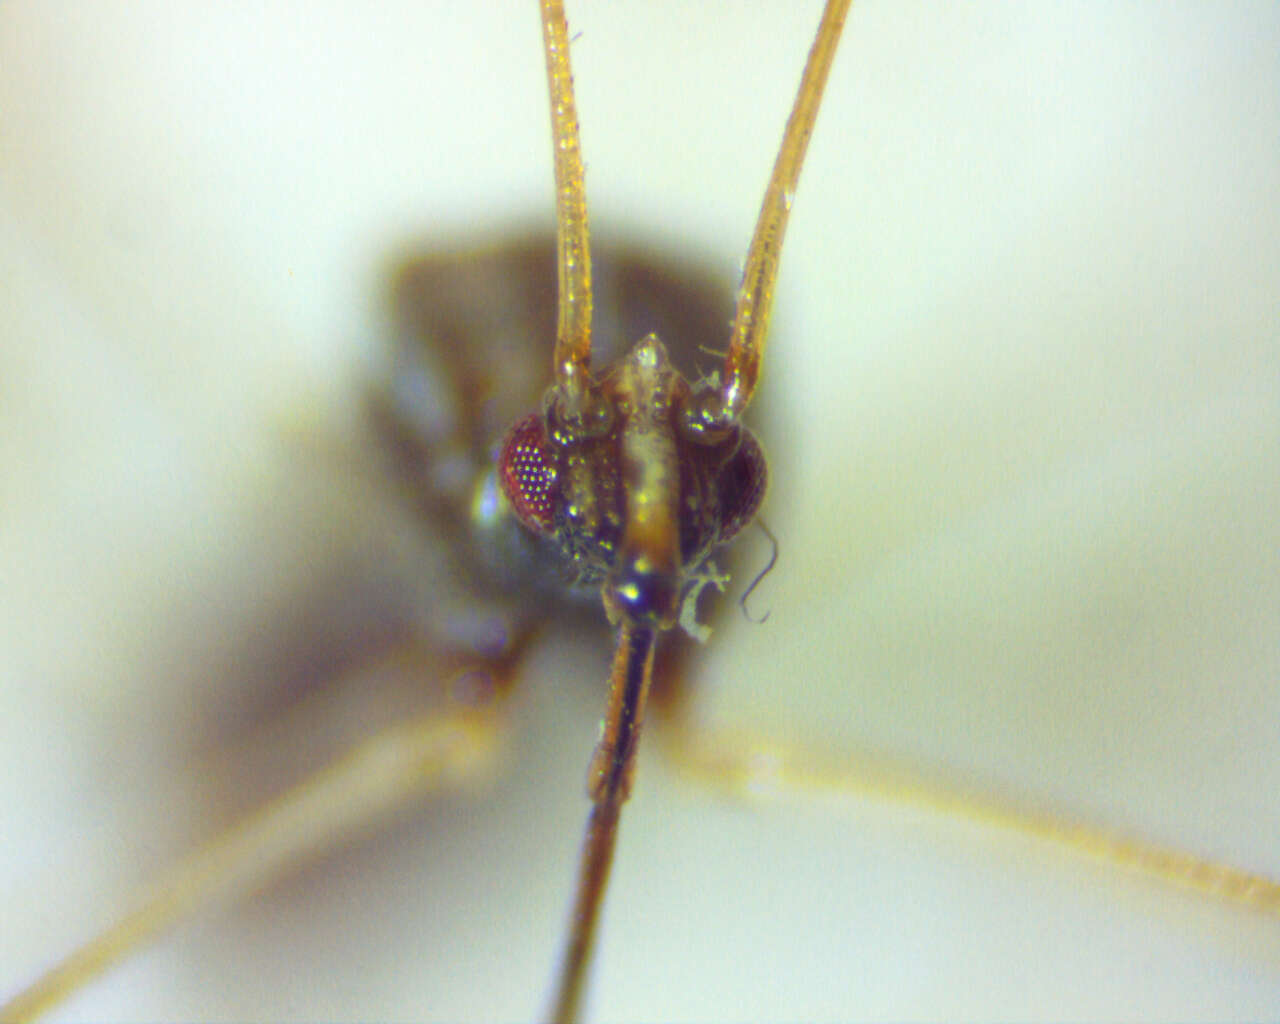 Image of Spined Stilt Bug